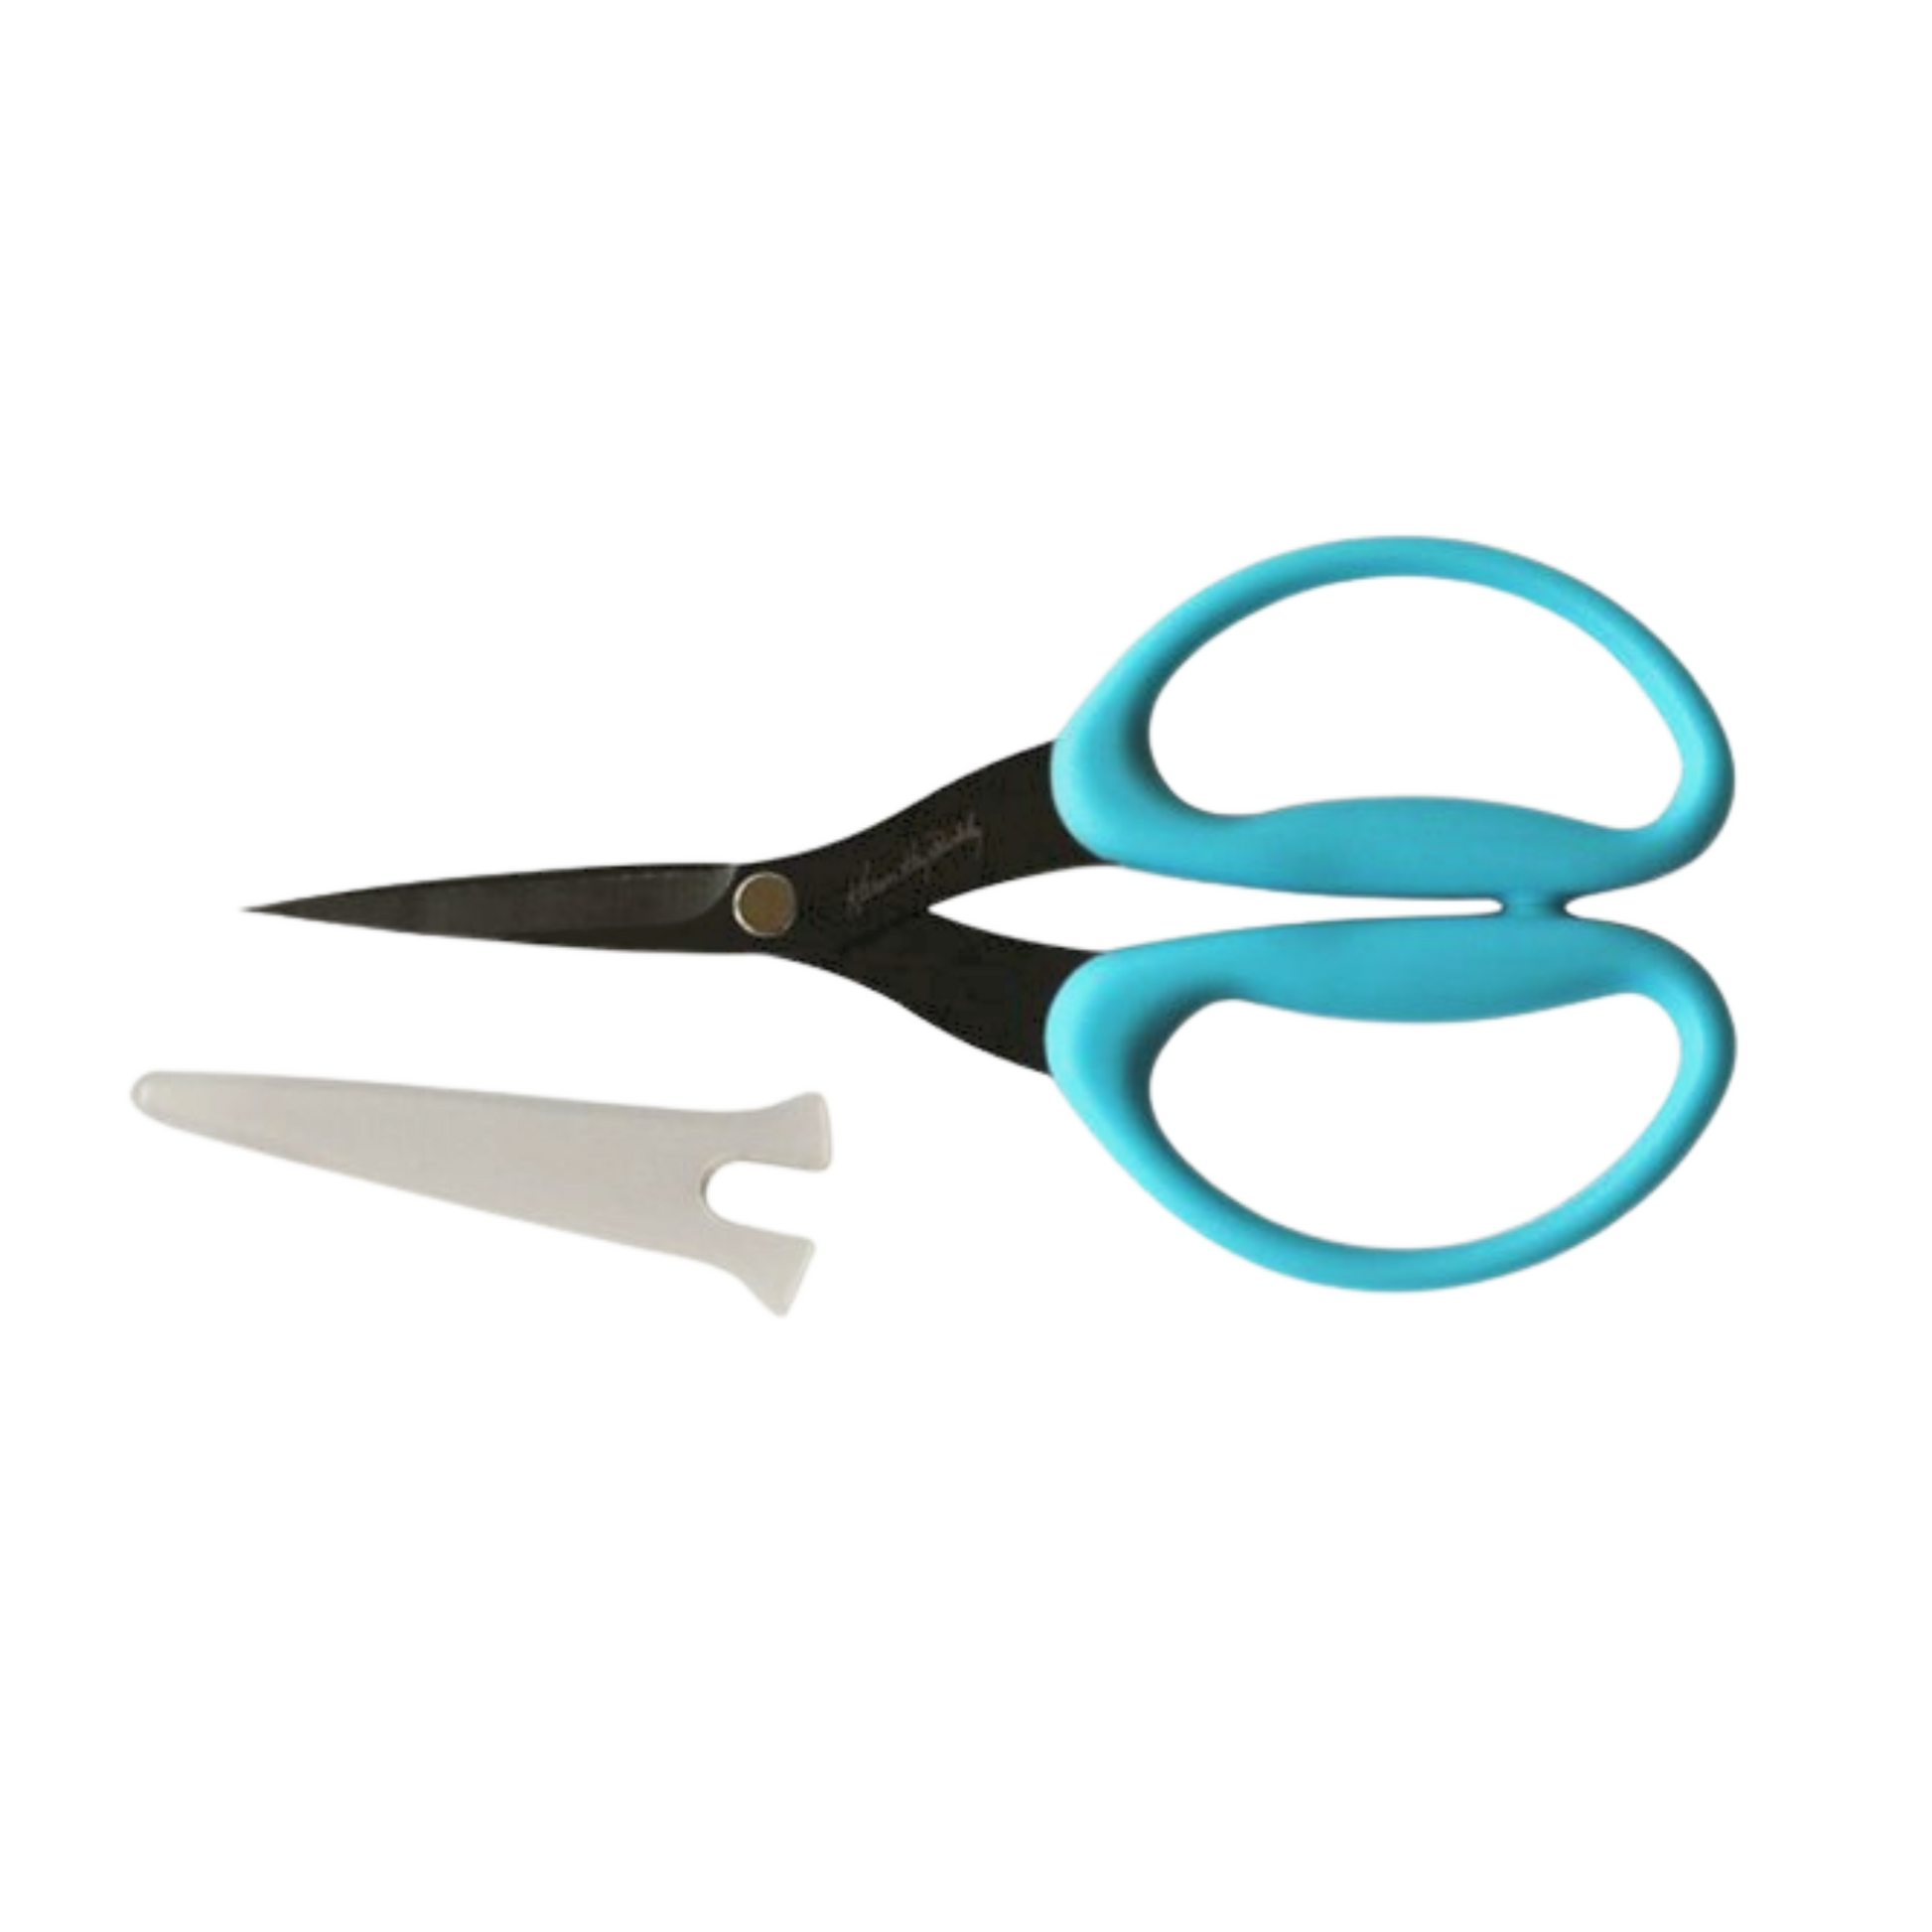 Karen Kay Buckley's Perfect Scissors 6 inch Medium Blue